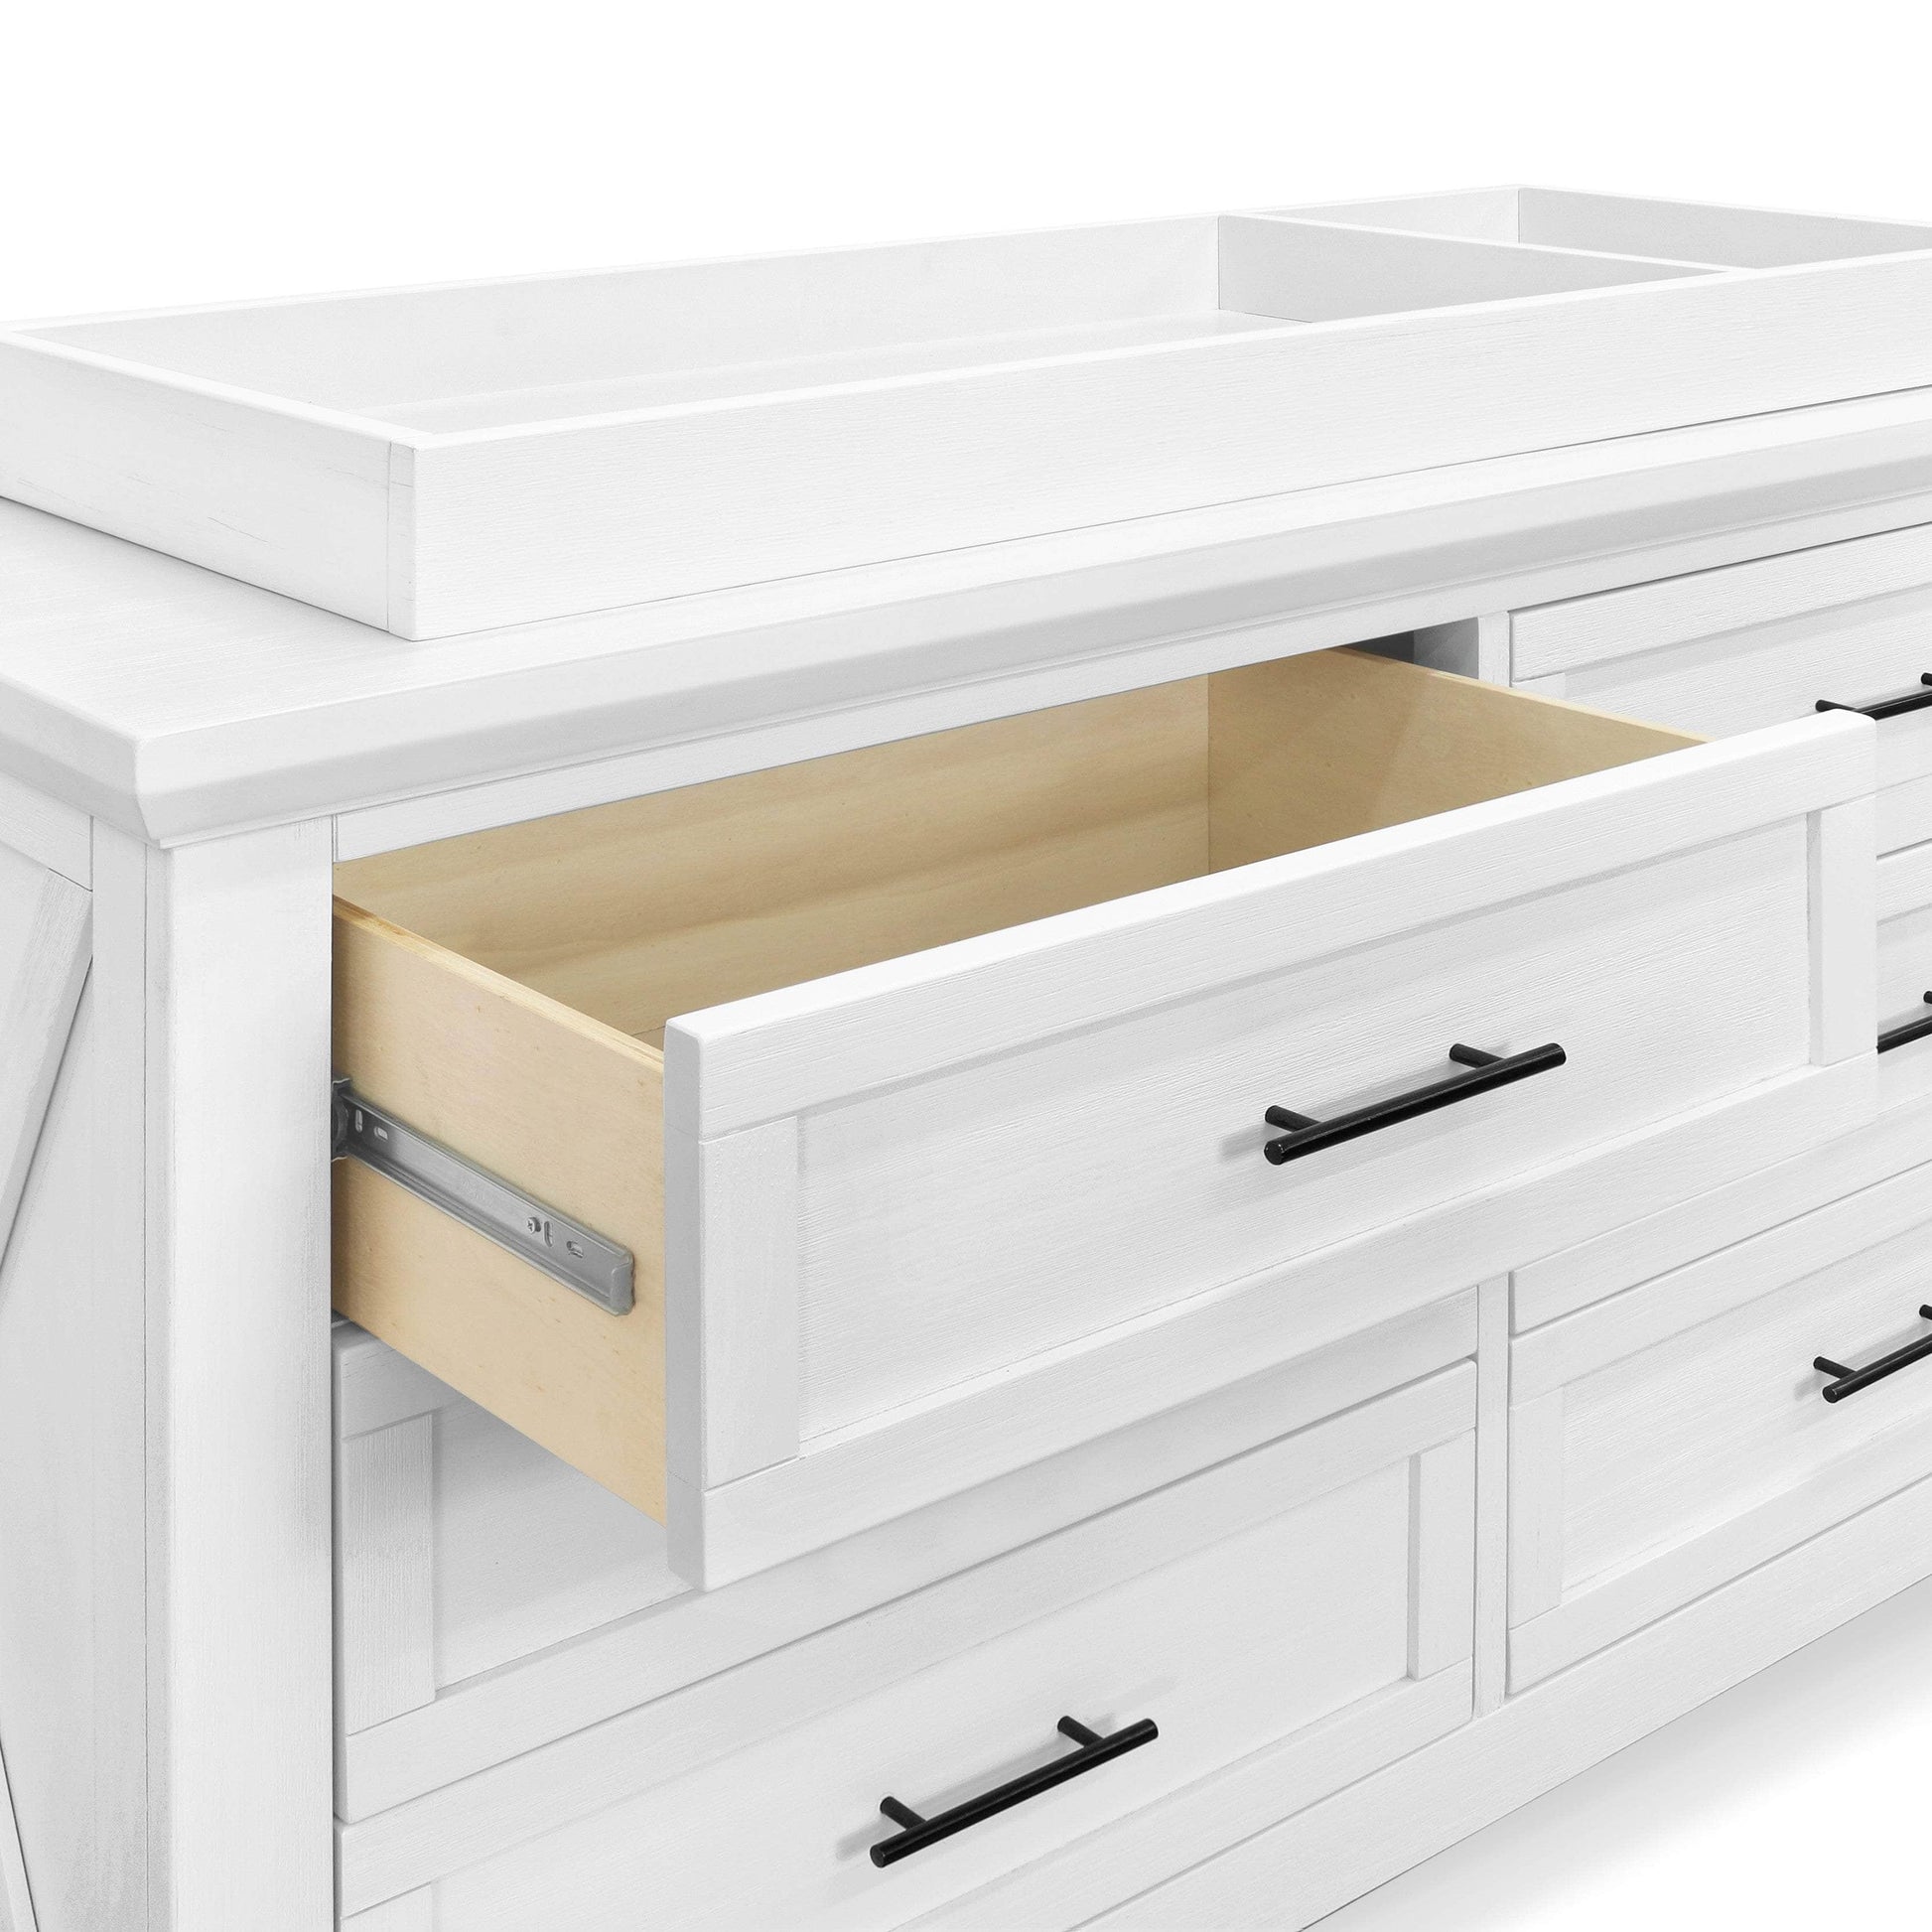 B14516LW,Emory Farmhouse 6-Drawer Dresser in Linen White